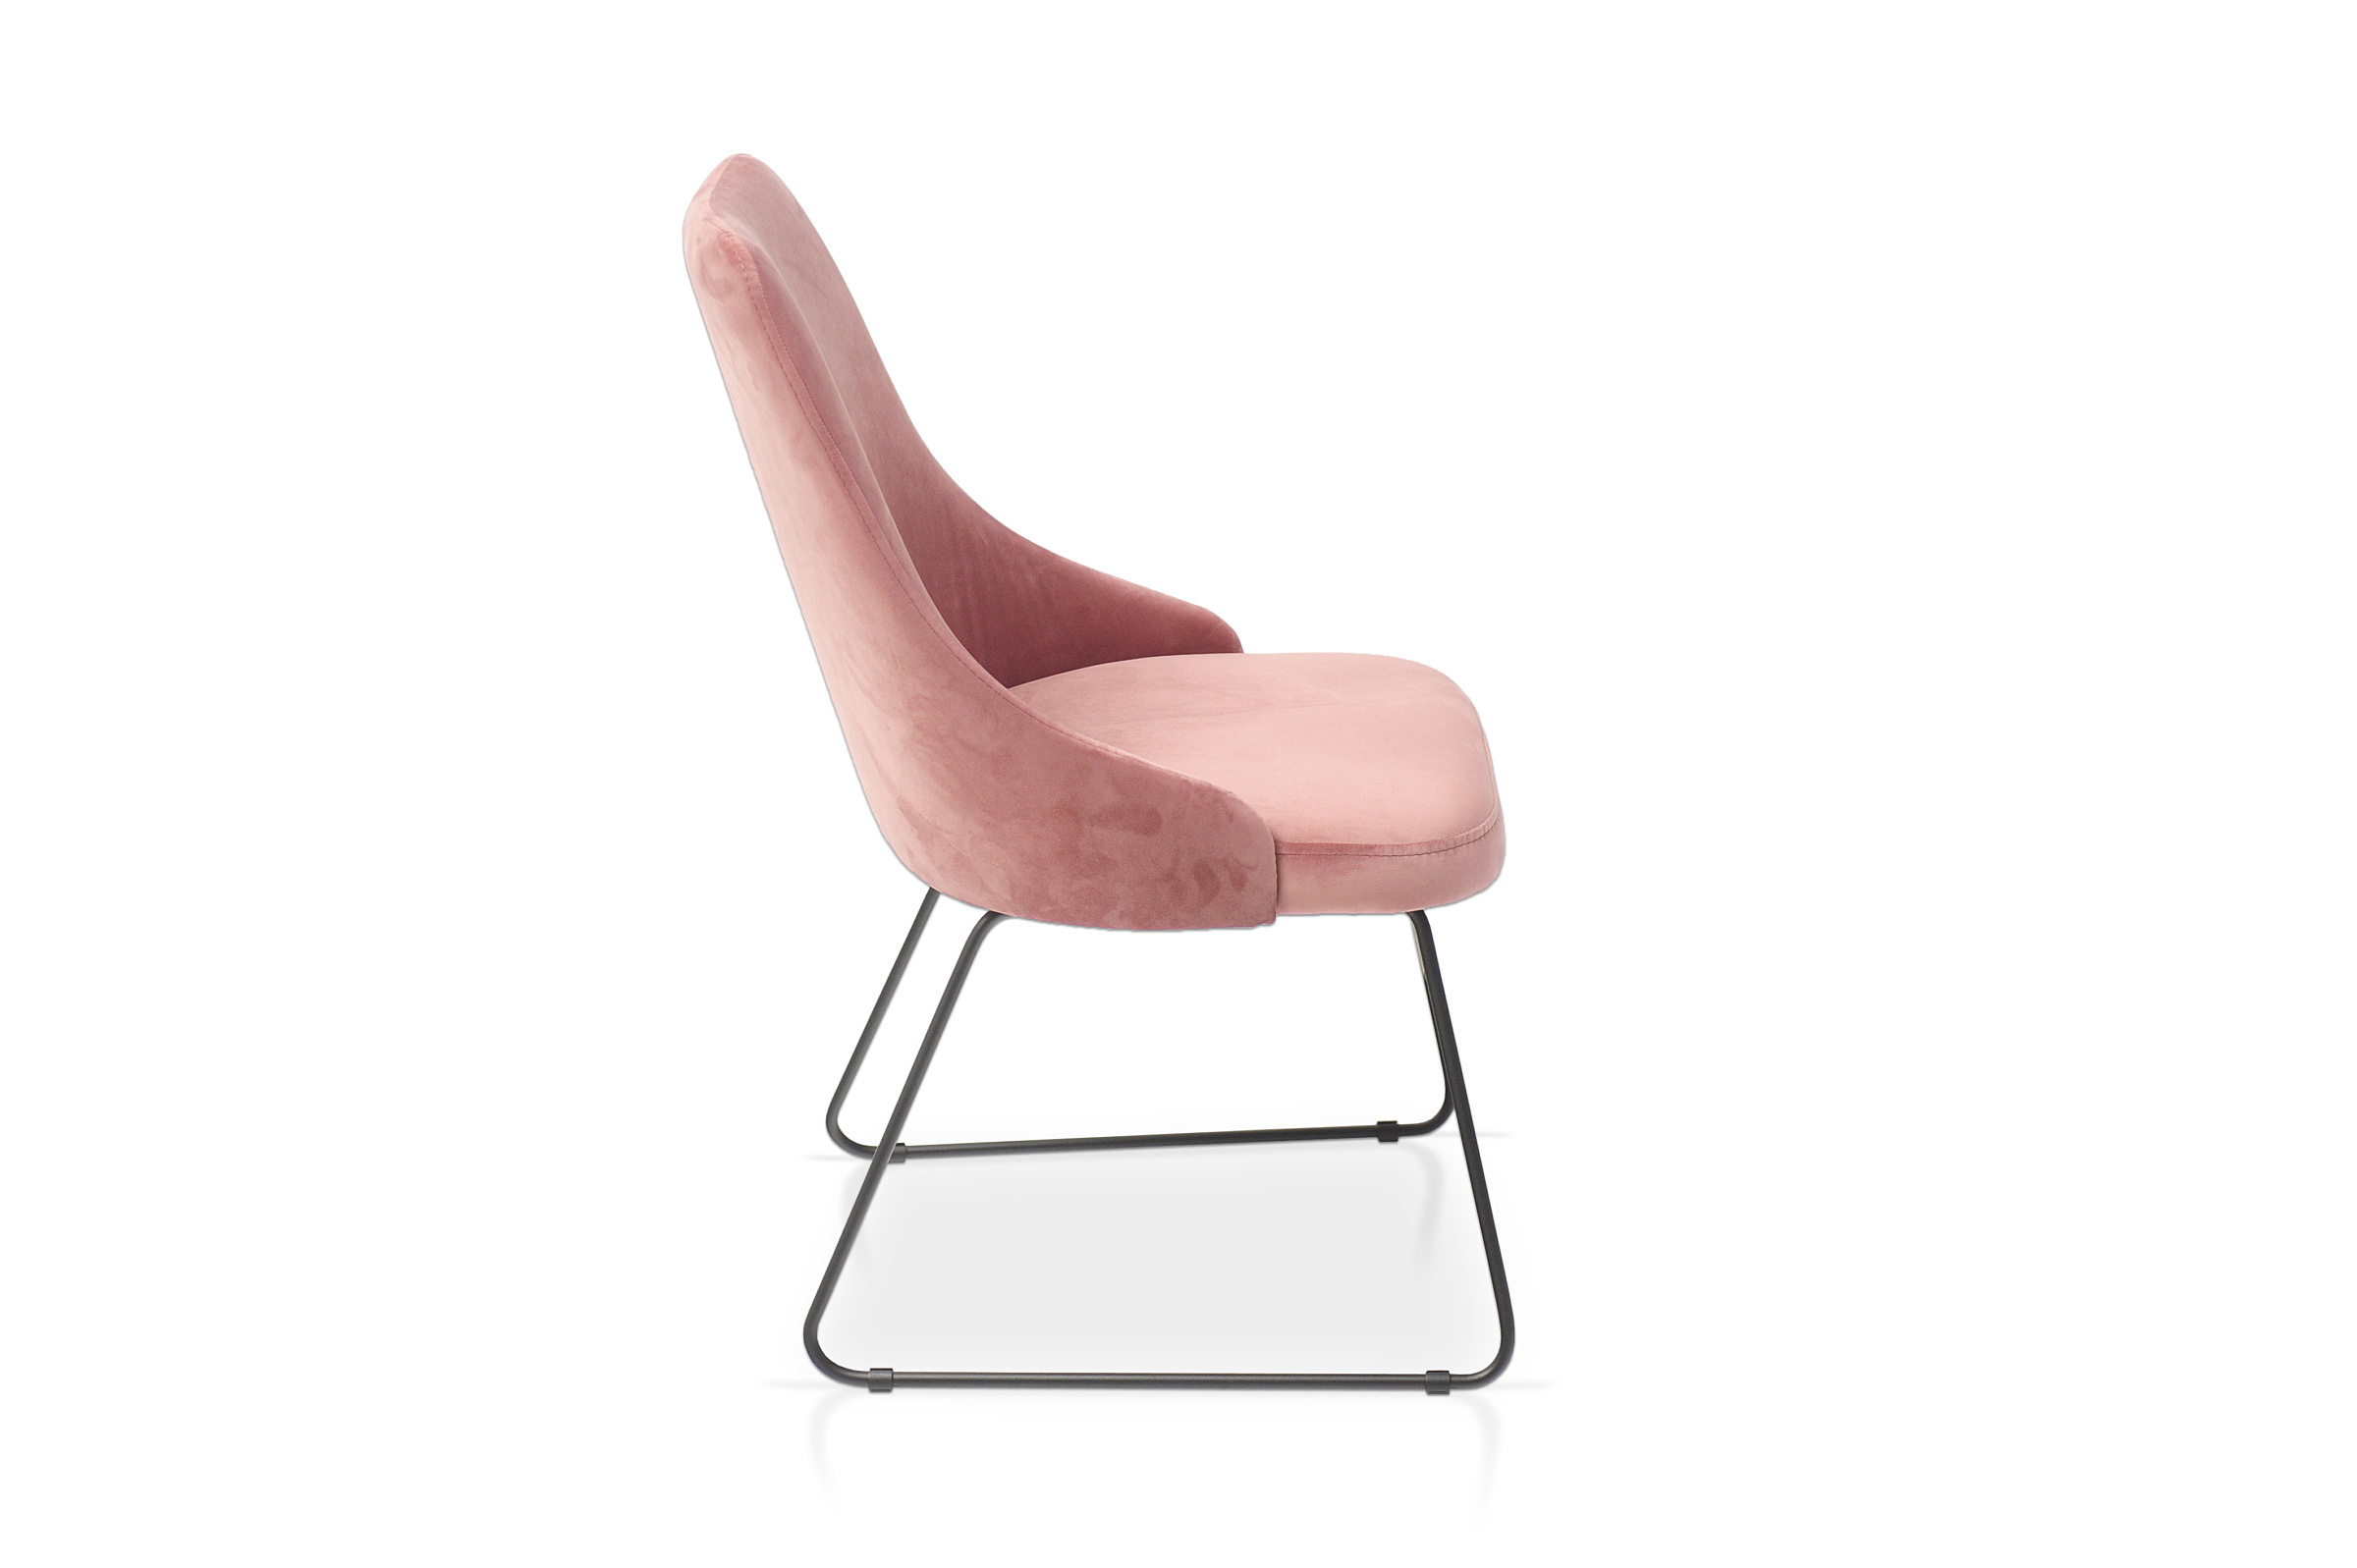 Wygodne i stabilne krzesło tc k-03 w pięknym kolorze różu z tkaniny hydrofobowej odpornej na zaplamienia